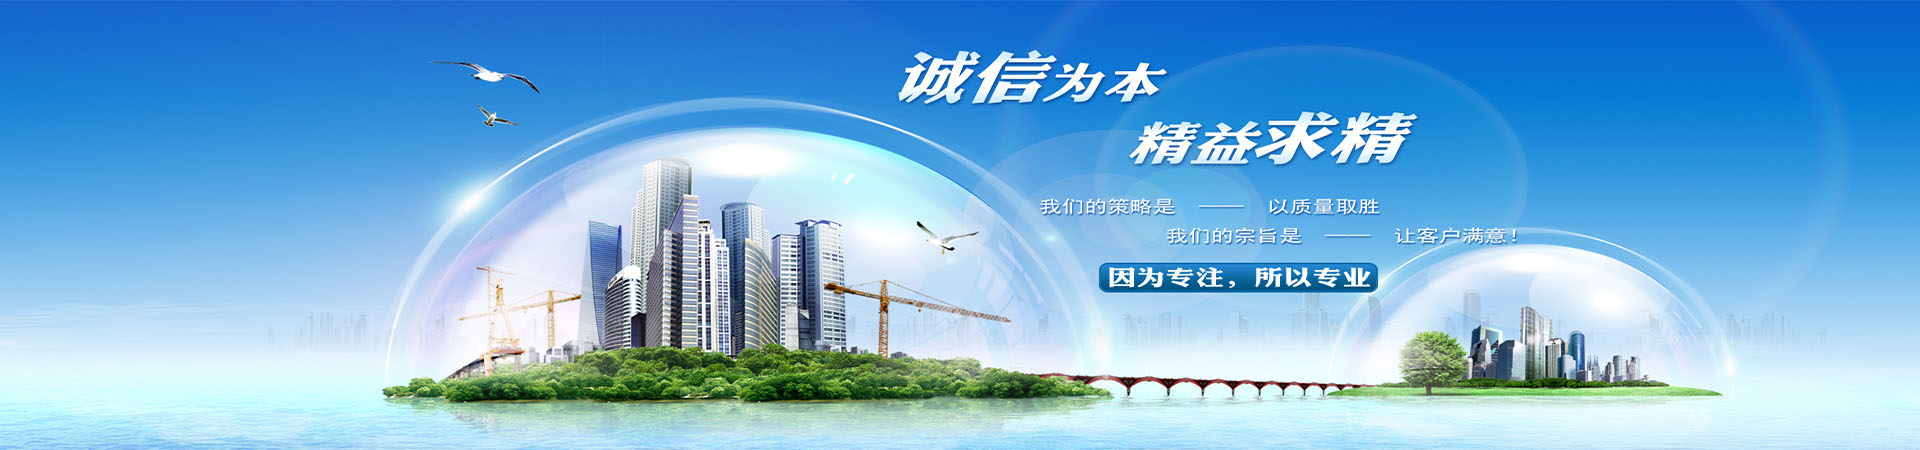 上海到毕节物流快运公司、本地上海到毕节物流快运公司、、上海到毕节物流快运公司